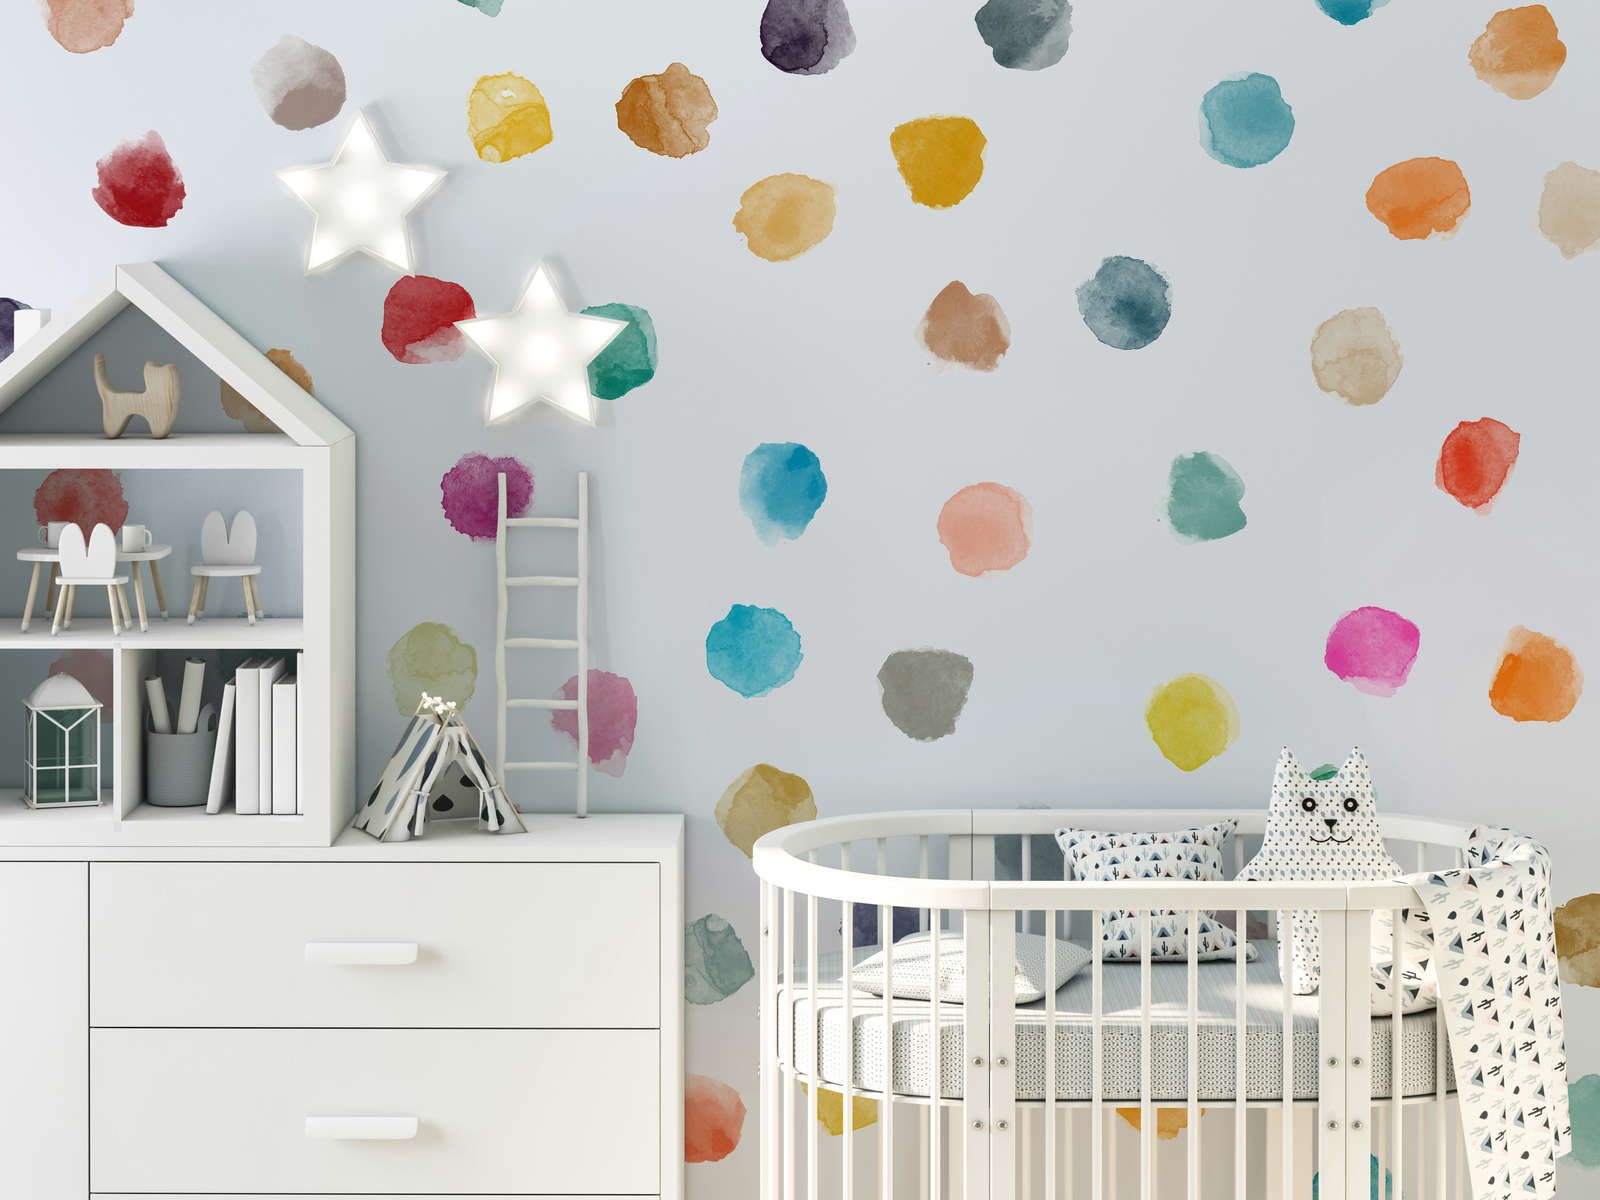             Fototapete fürs Kinderzimmer mit bunten Punkten – Glattes & perlmutt-schimmerndes Vlies
        